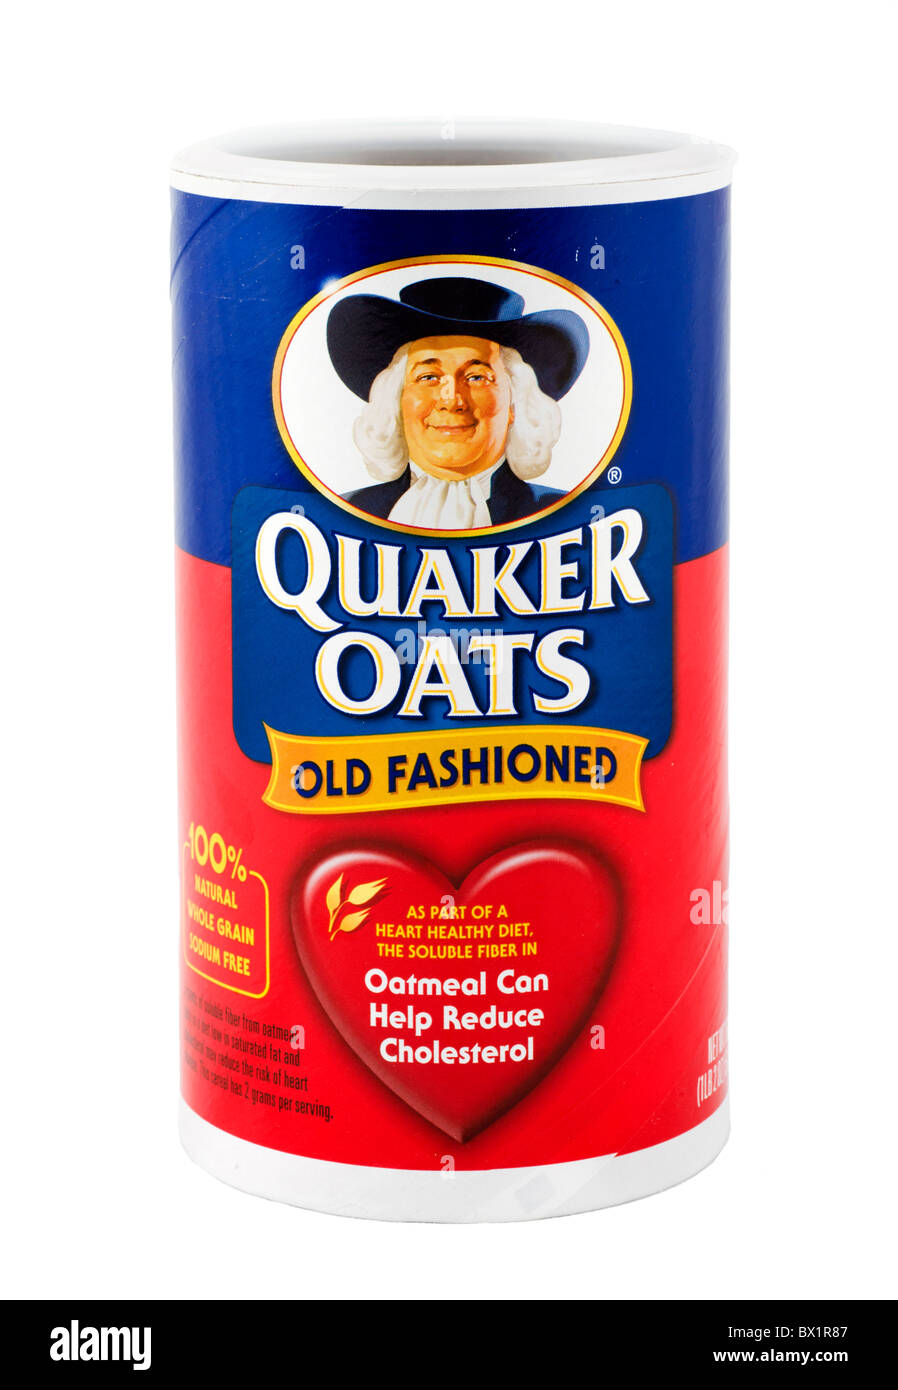 Old Fashioned Quaker Oats oatmeal, USA Stock Photo